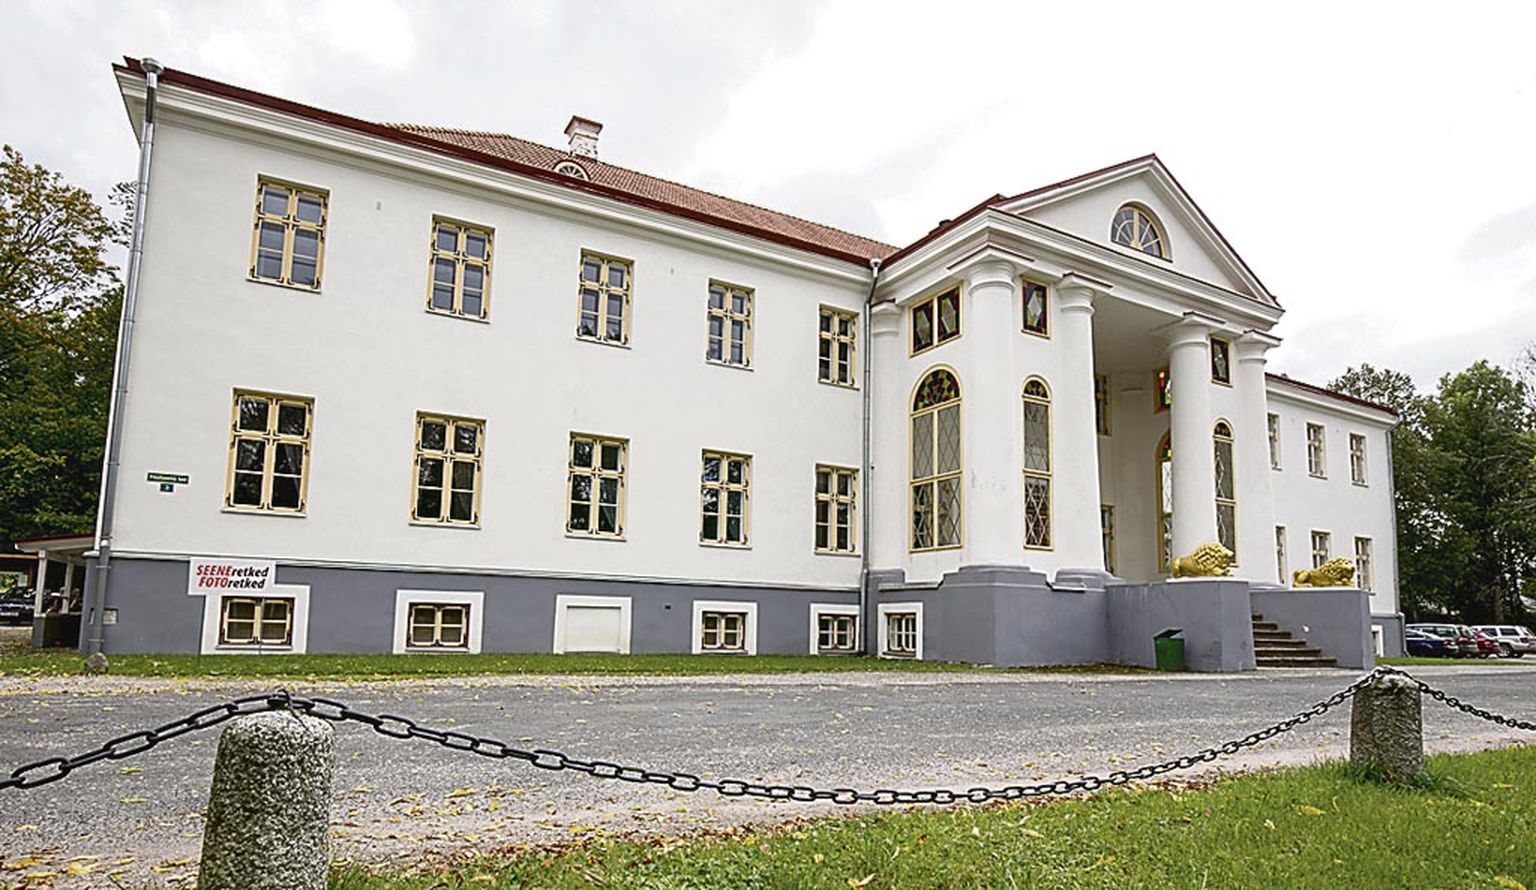 Õppetöö ületoomine Pärnusse lõikas läbi 91 aasta pikkuse kutsehariduse andmise Voltveti mõisas.